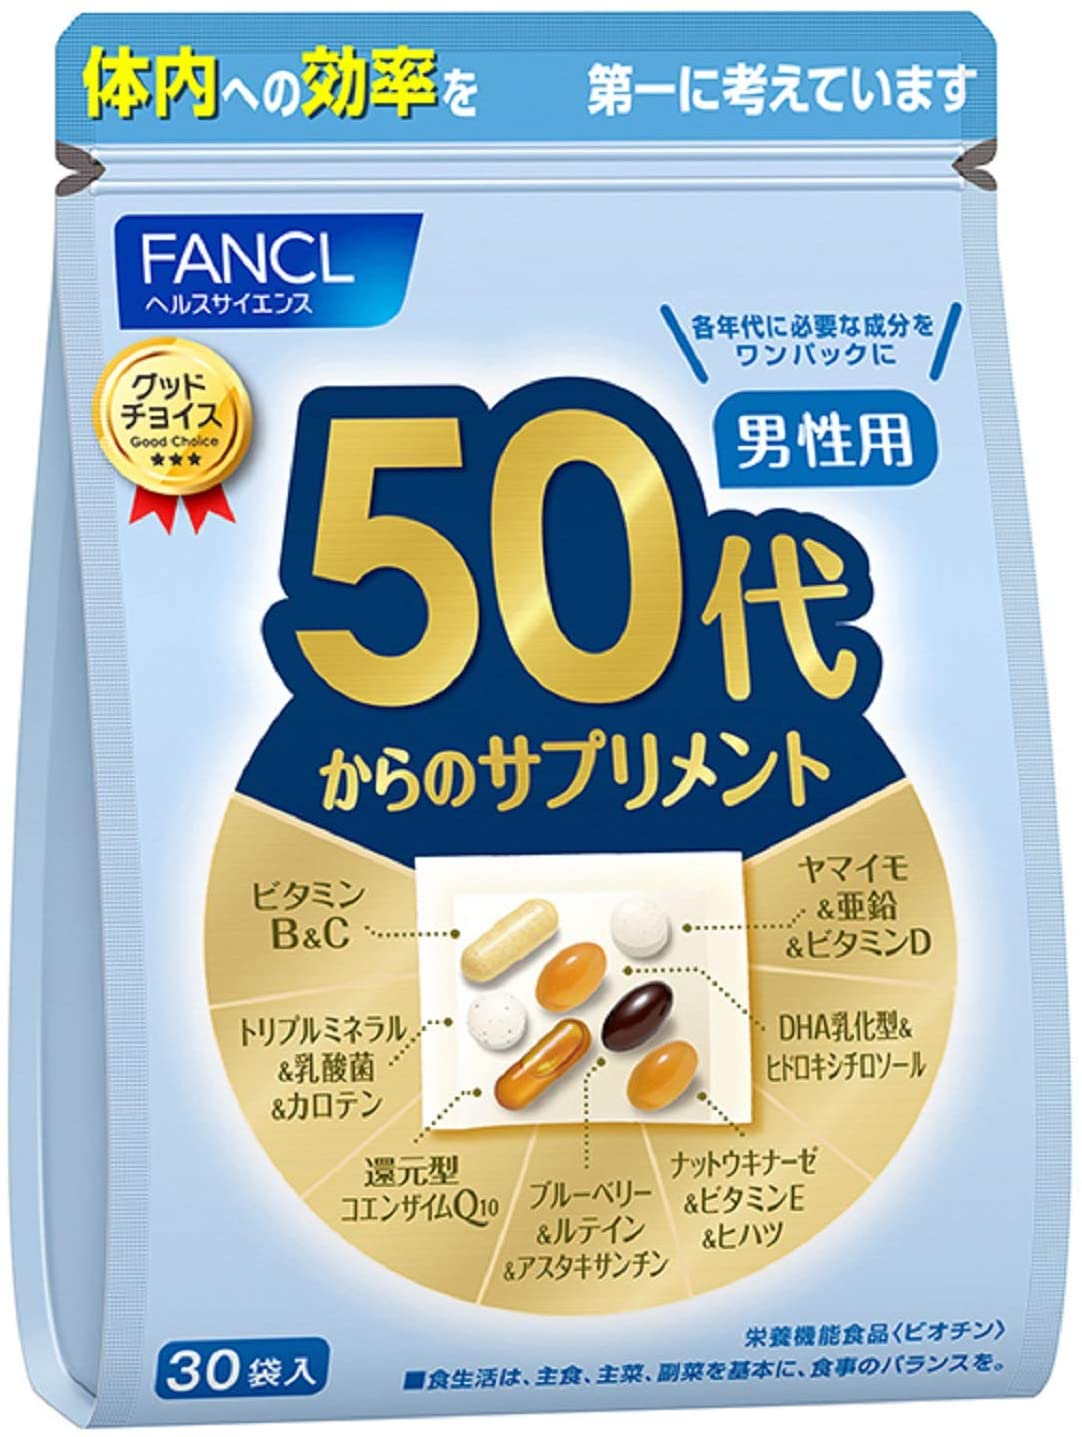 Витаминный комплекс Fancl для мужчин старше 50 лет, 30 пакетиков х 7 таблеток